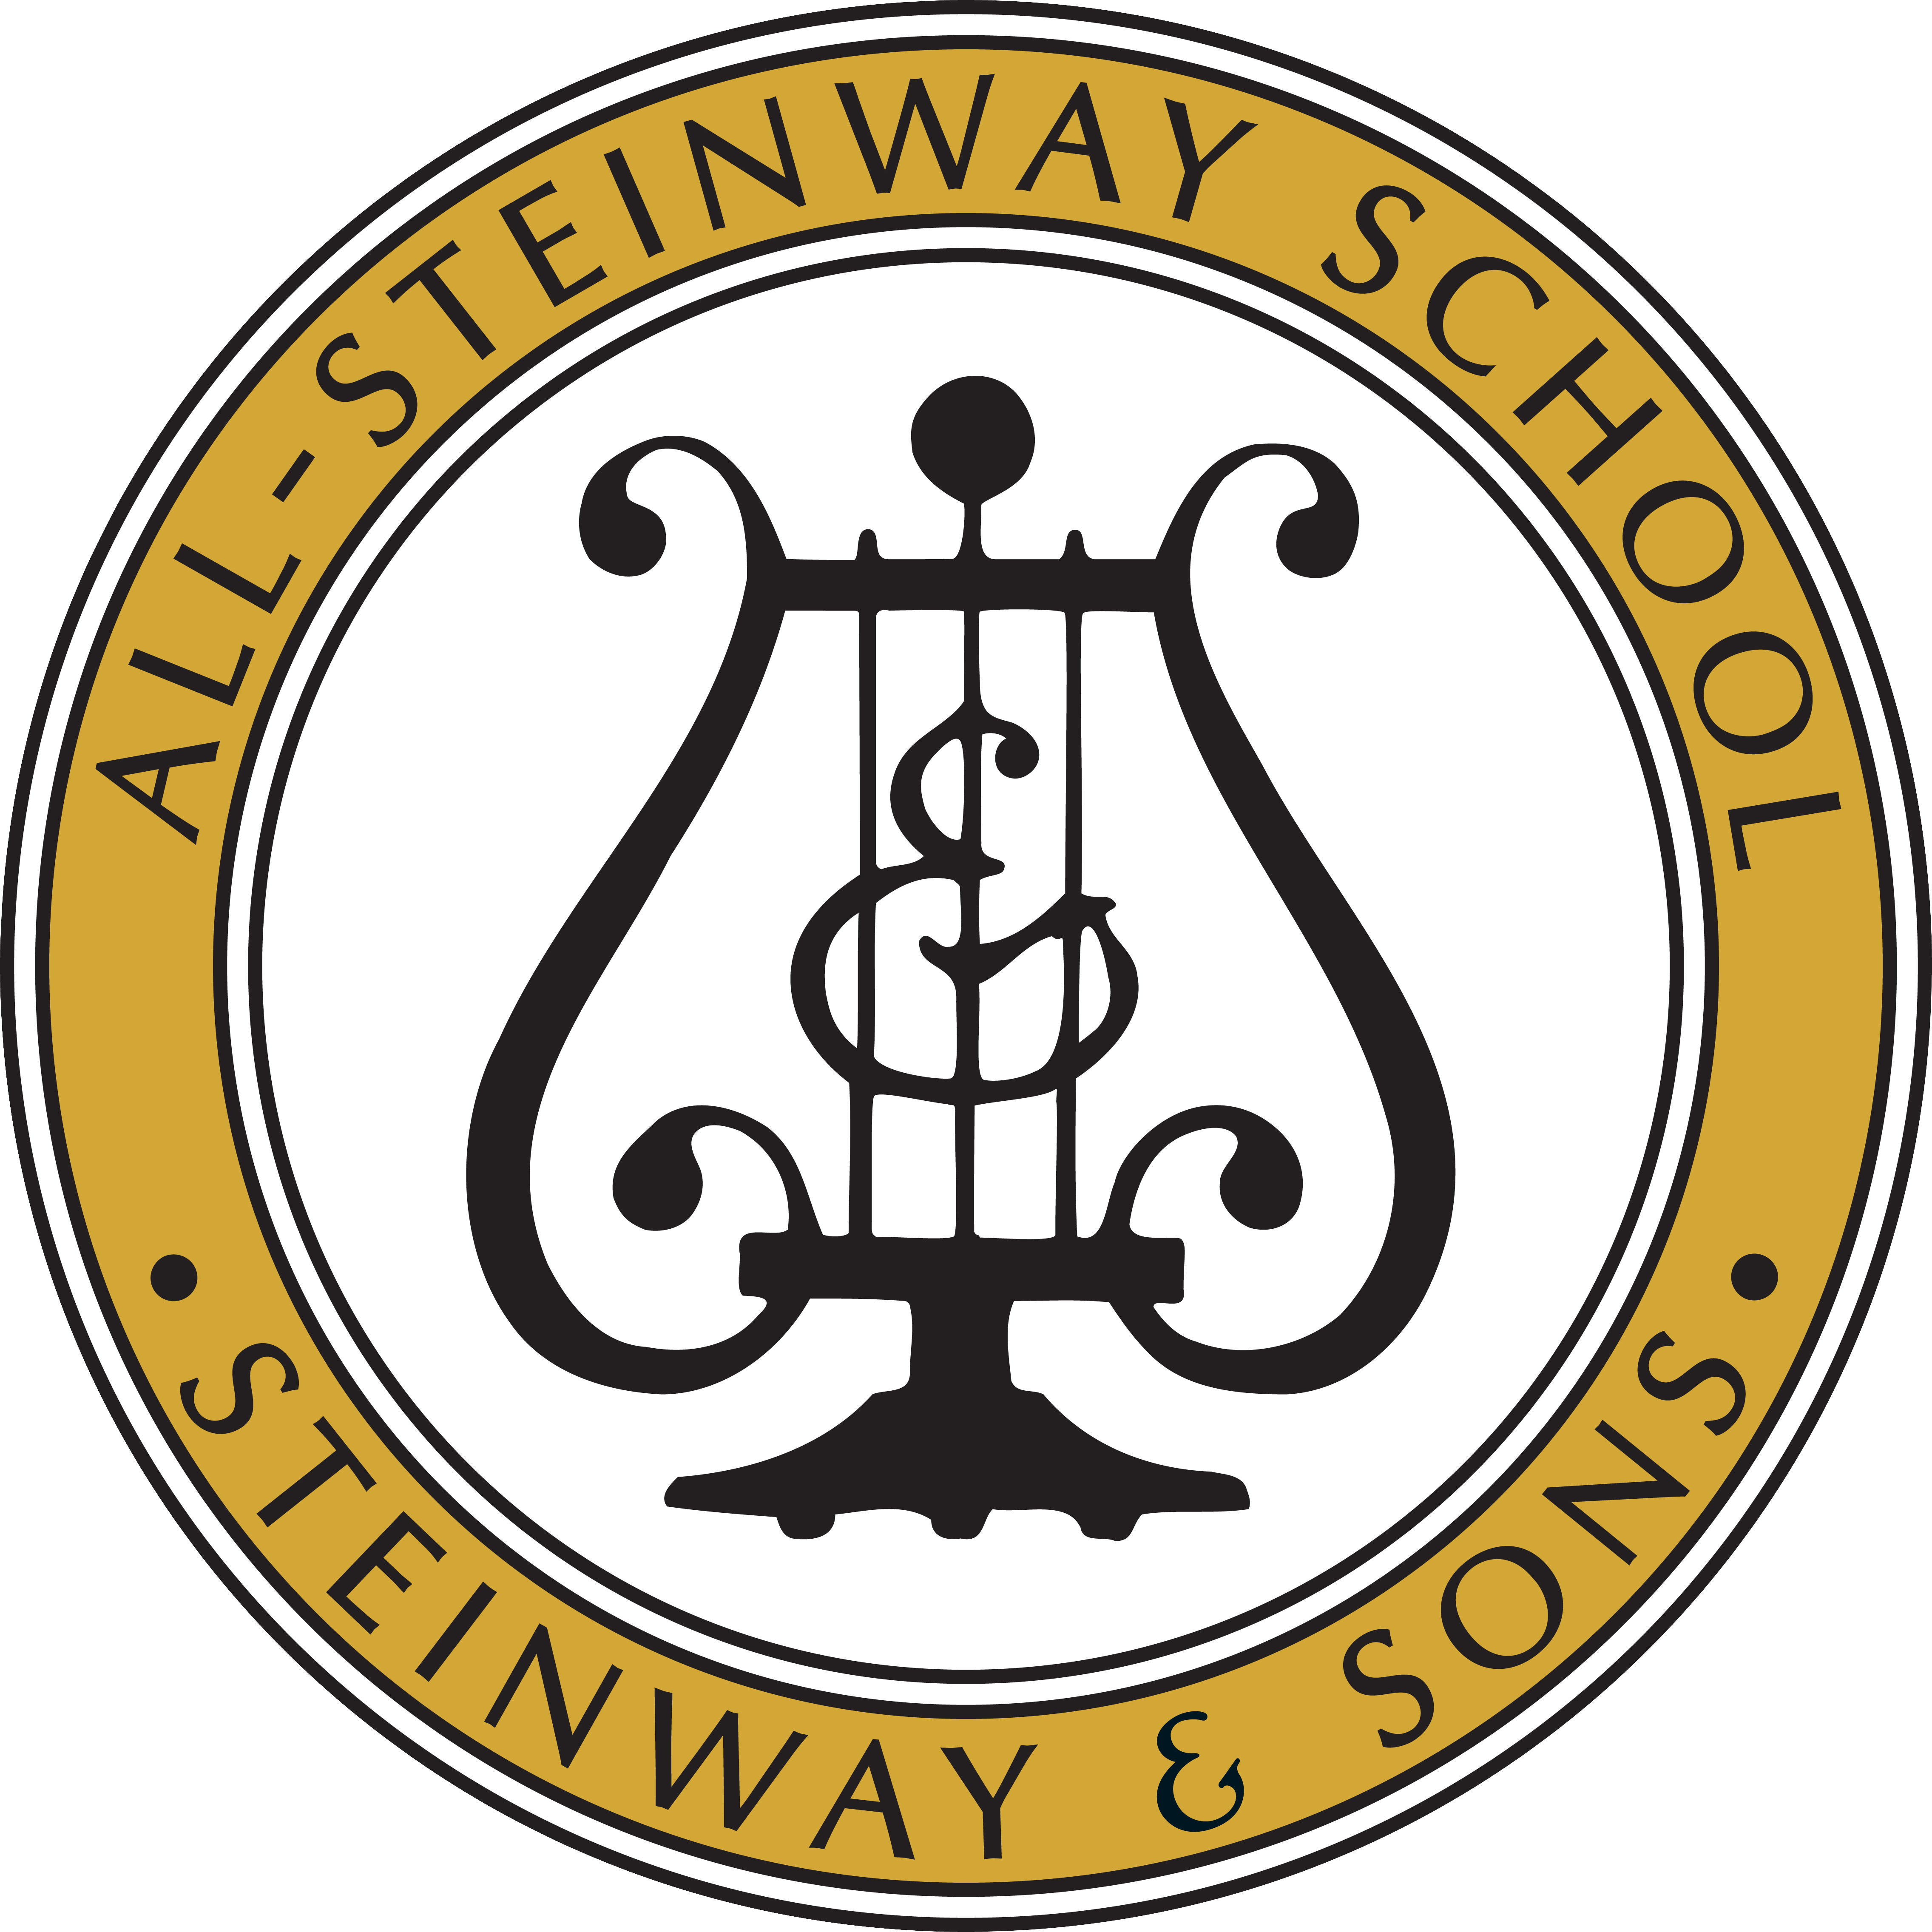 All-Steinway-School-logo-R.png